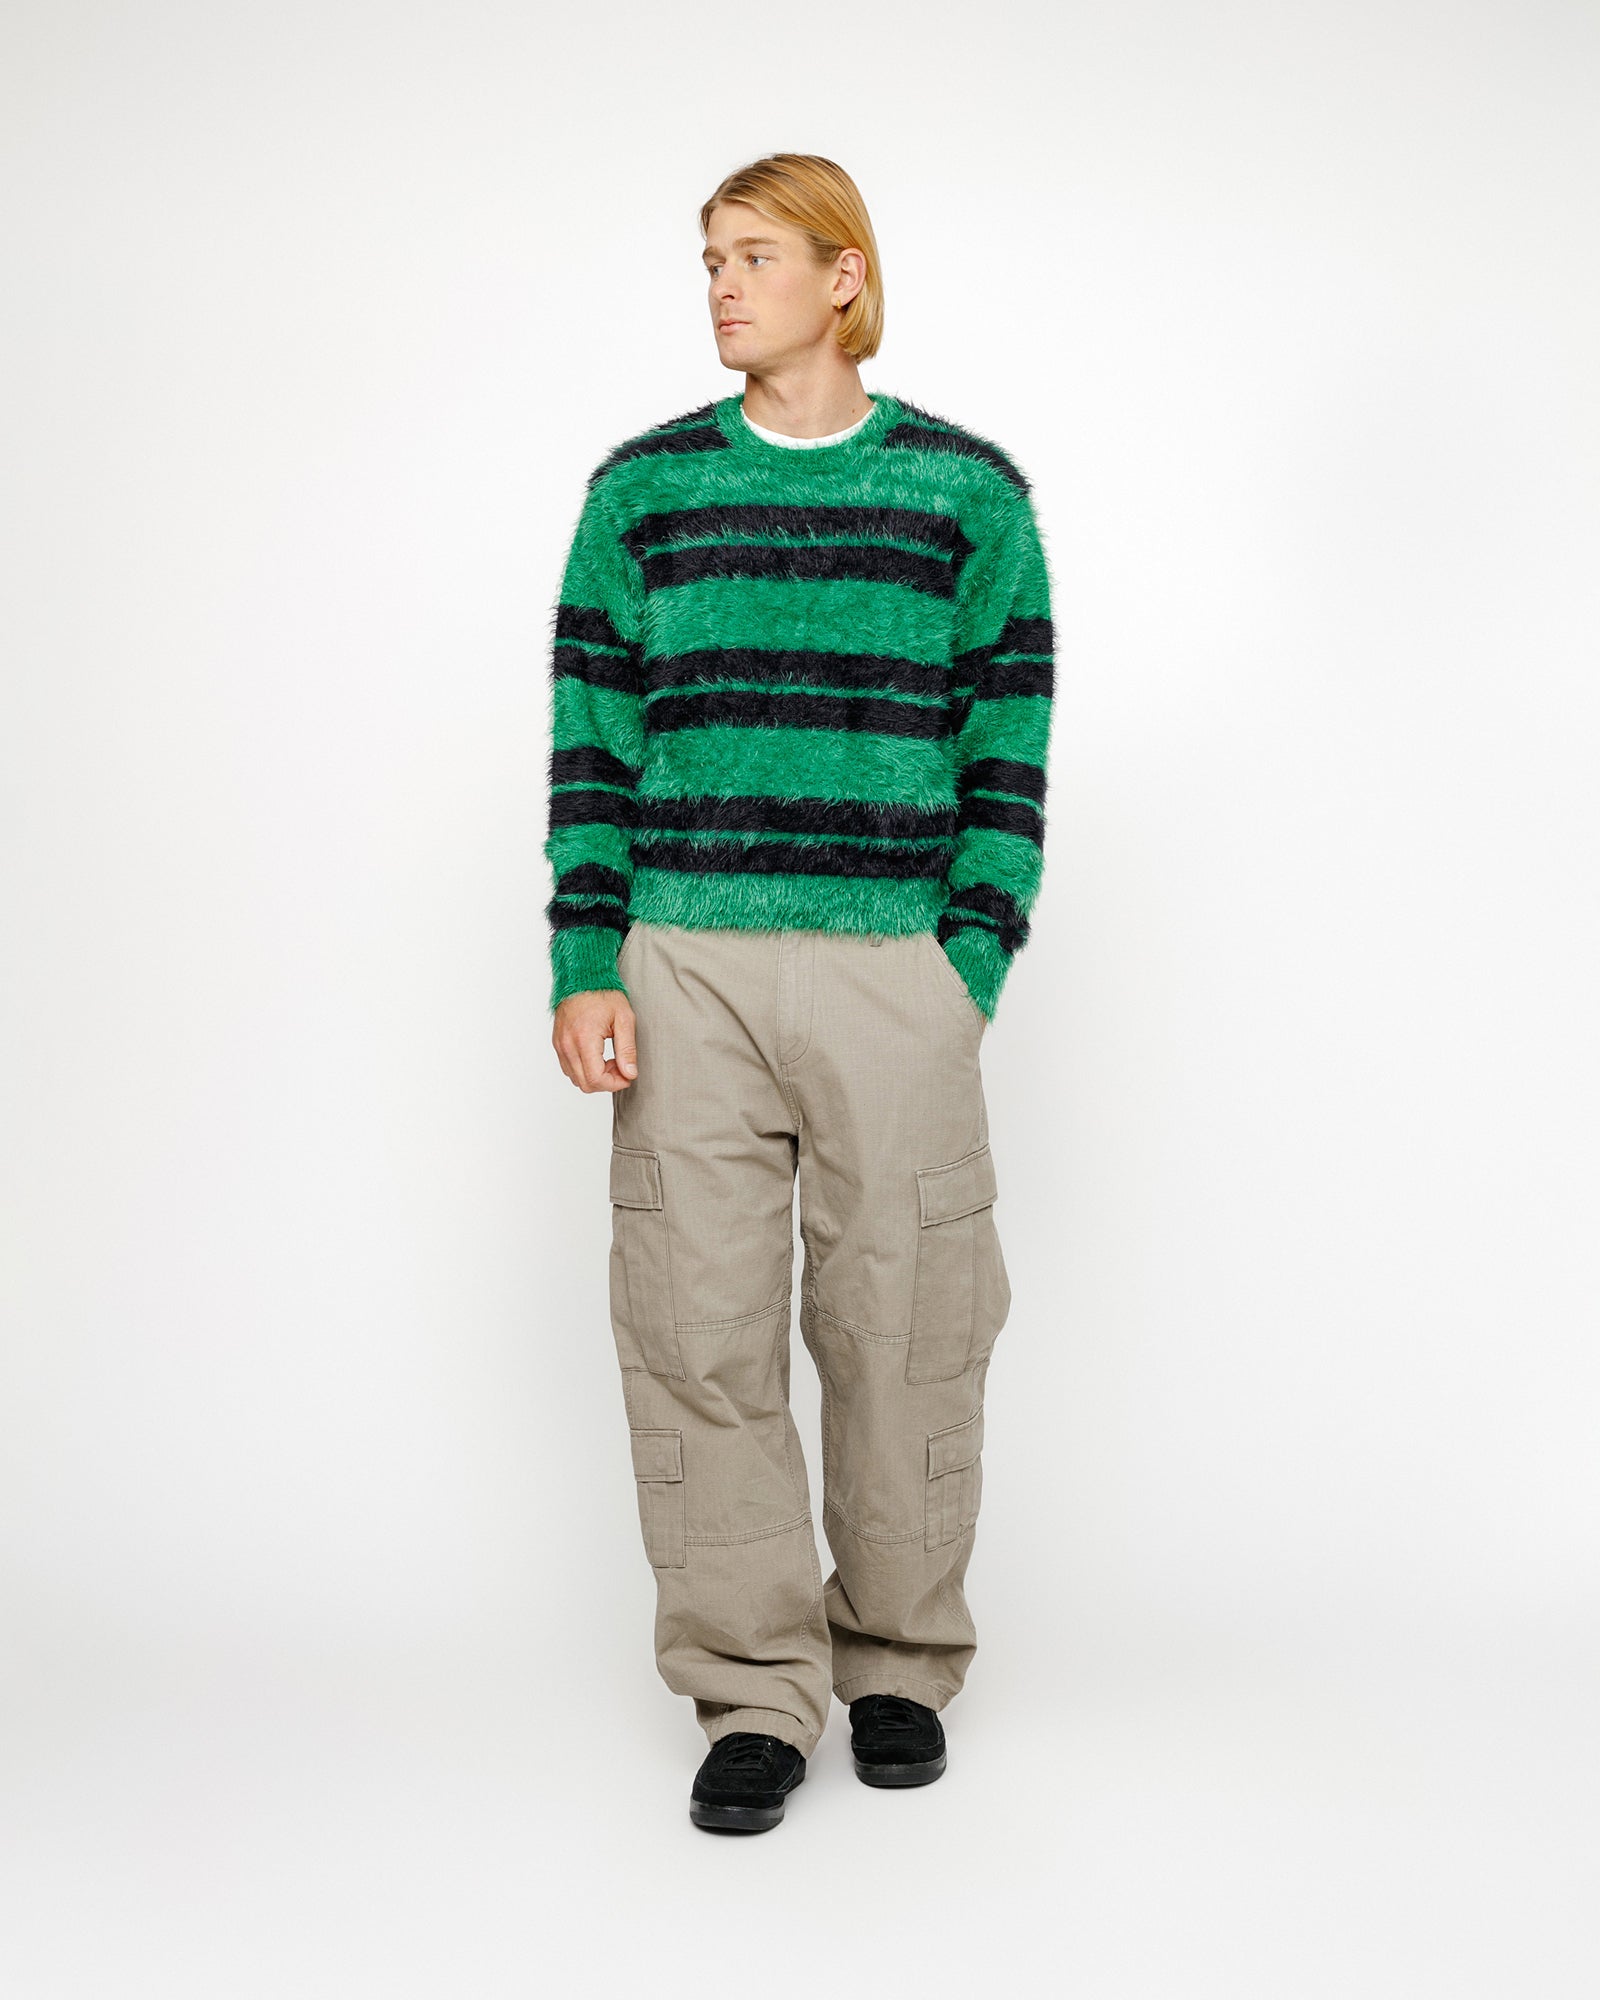 Hairy Stripe Crew Sweater in black/green – Stüssy